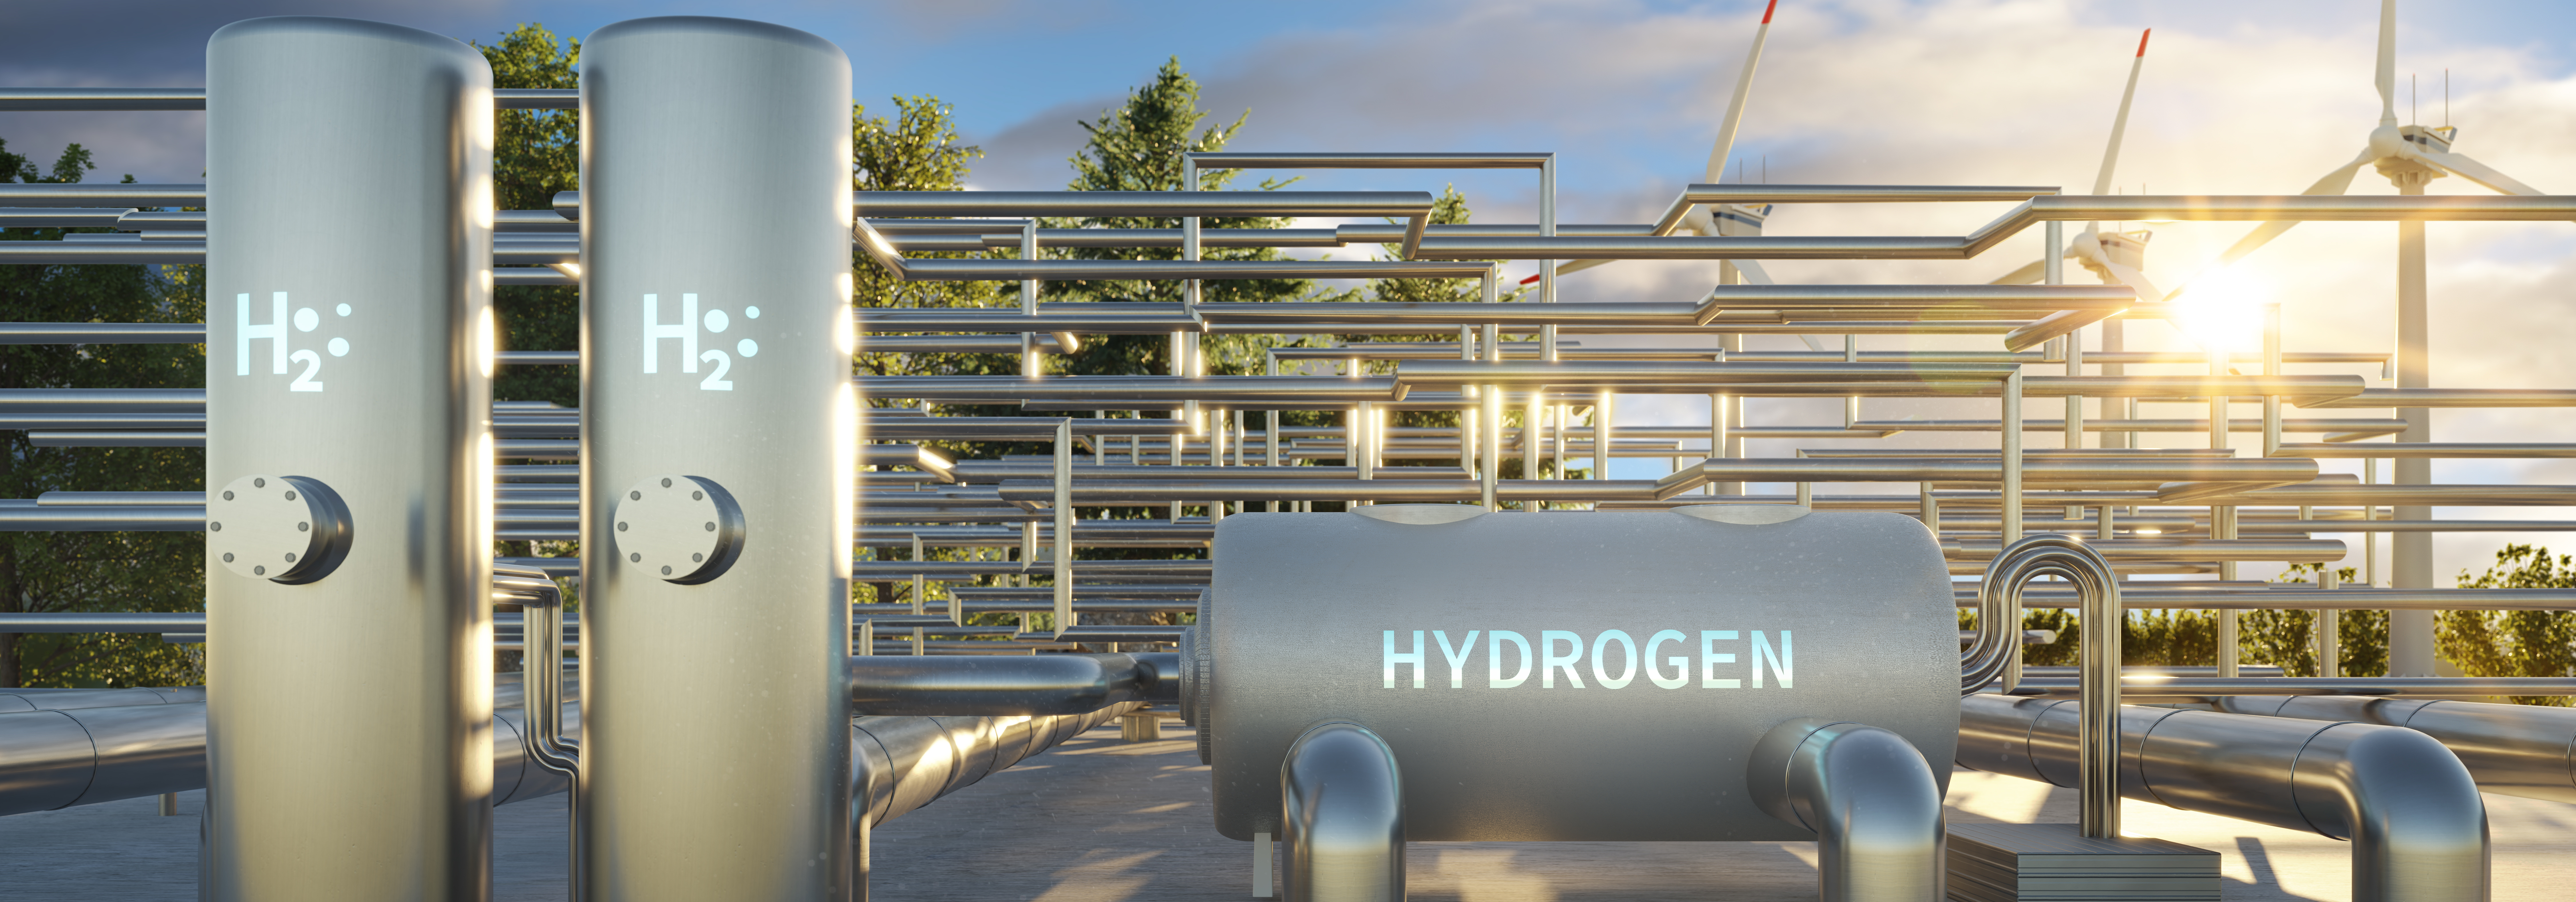 L'hydrogène au service de la transition énergétique. © PhotoGranary